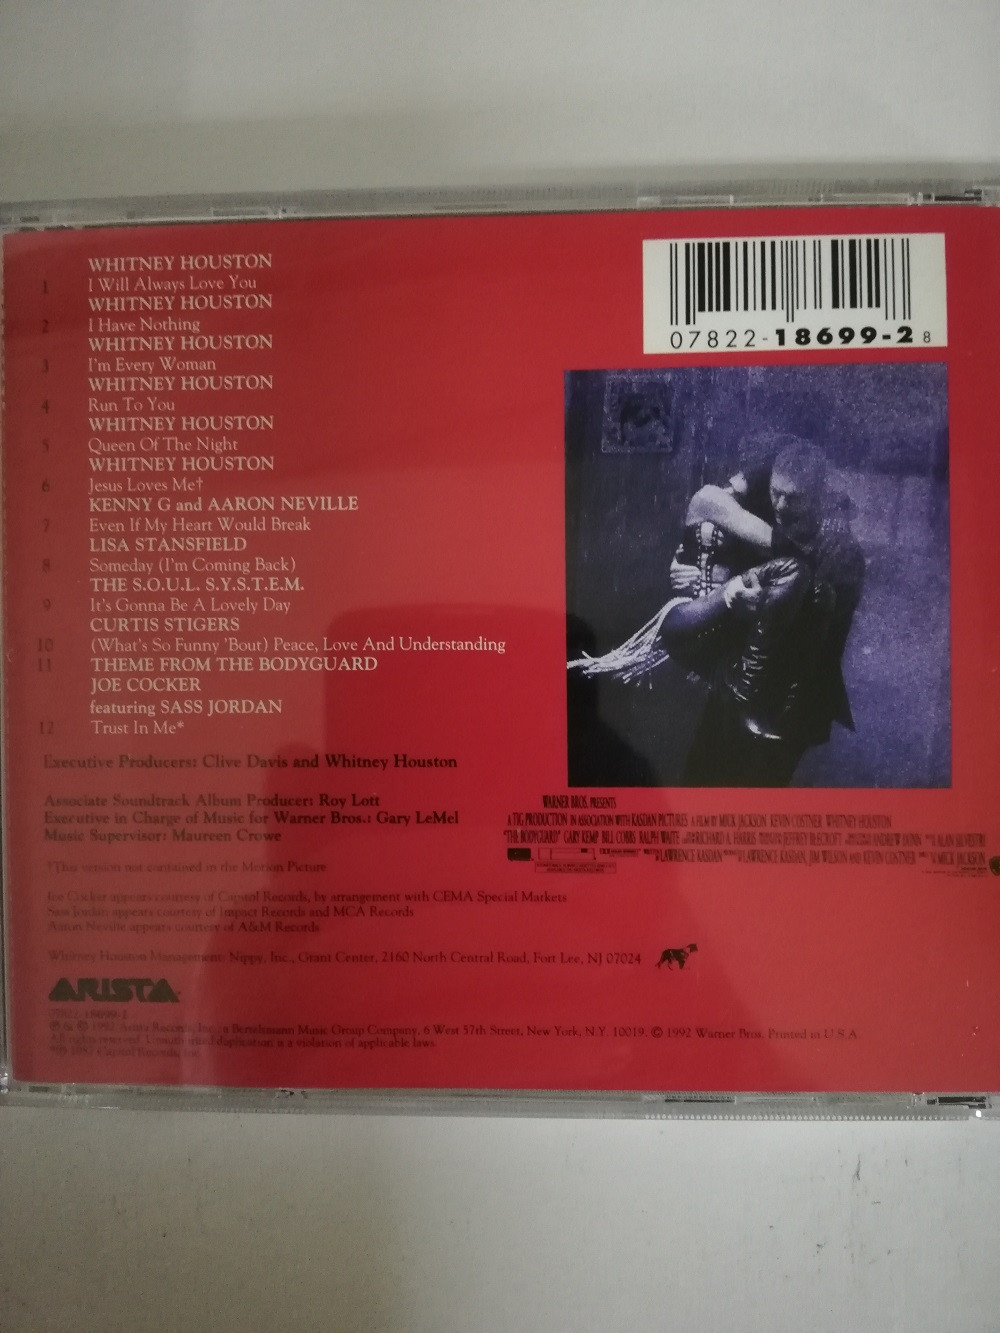 Imagen CD THE BODYGUARD - ORIGINAL SOUNDTRACK ALBUM 2